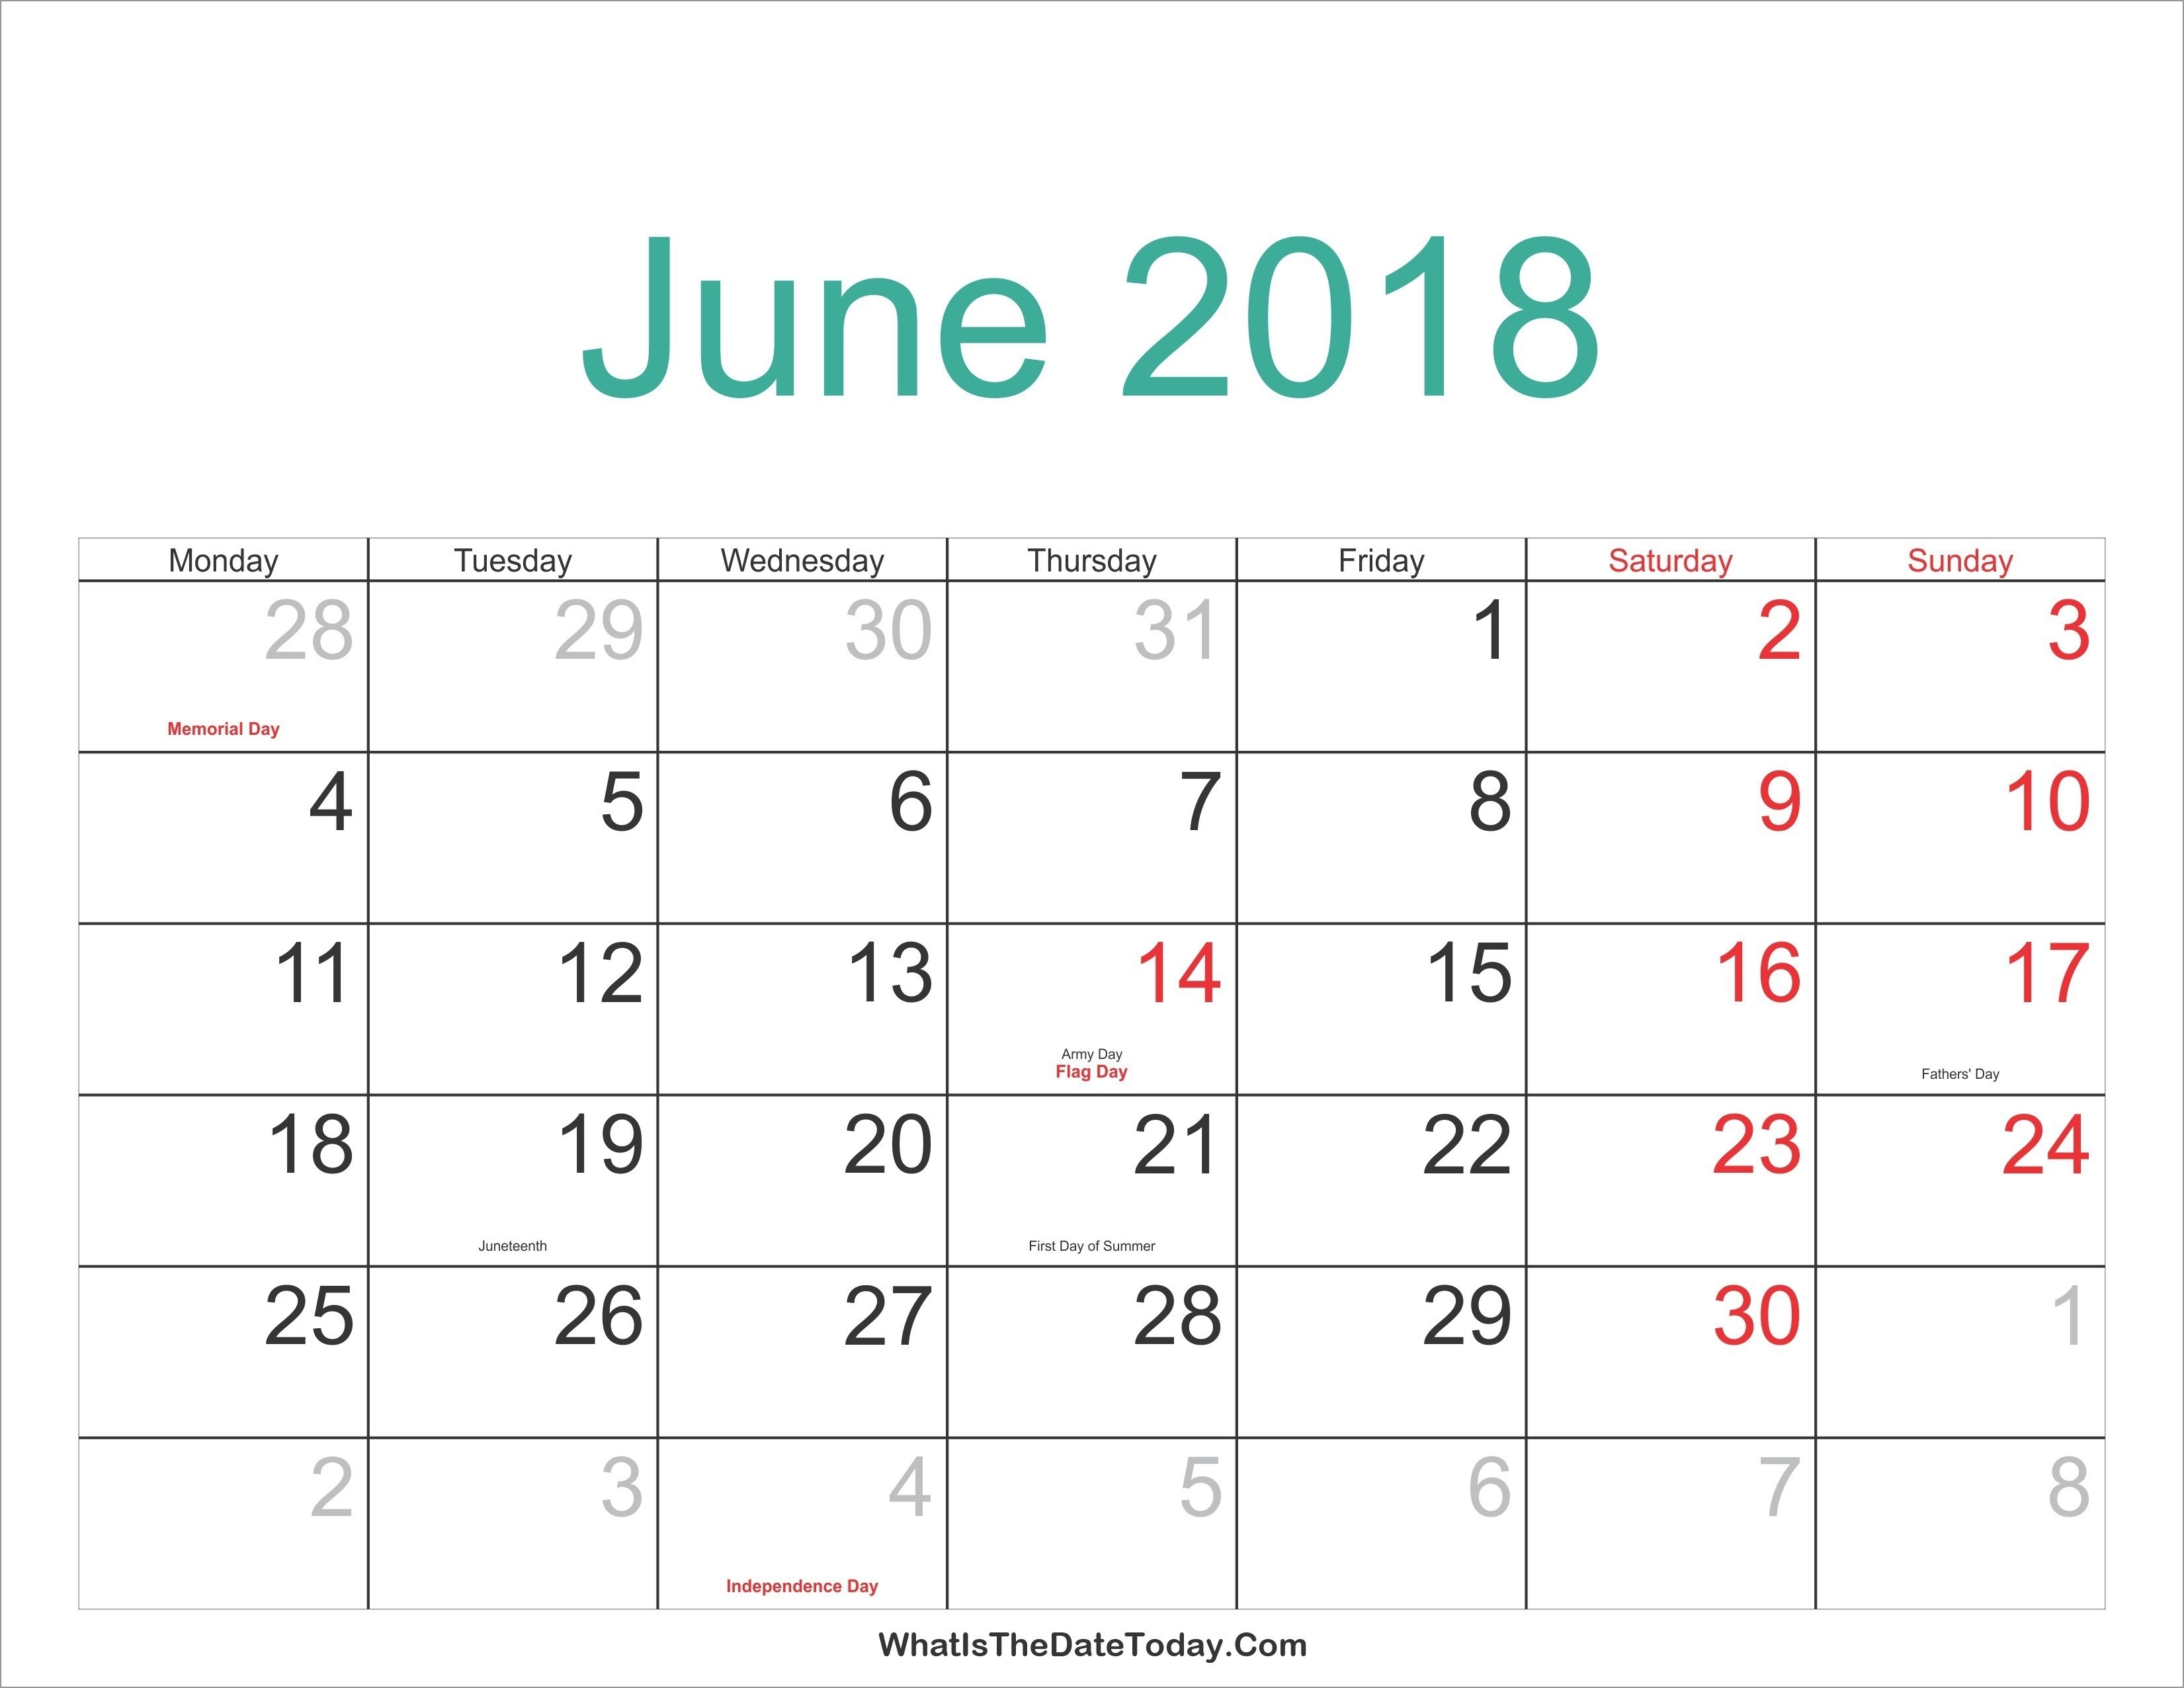 february-2019-calendar-with-holidays-nz-qualads